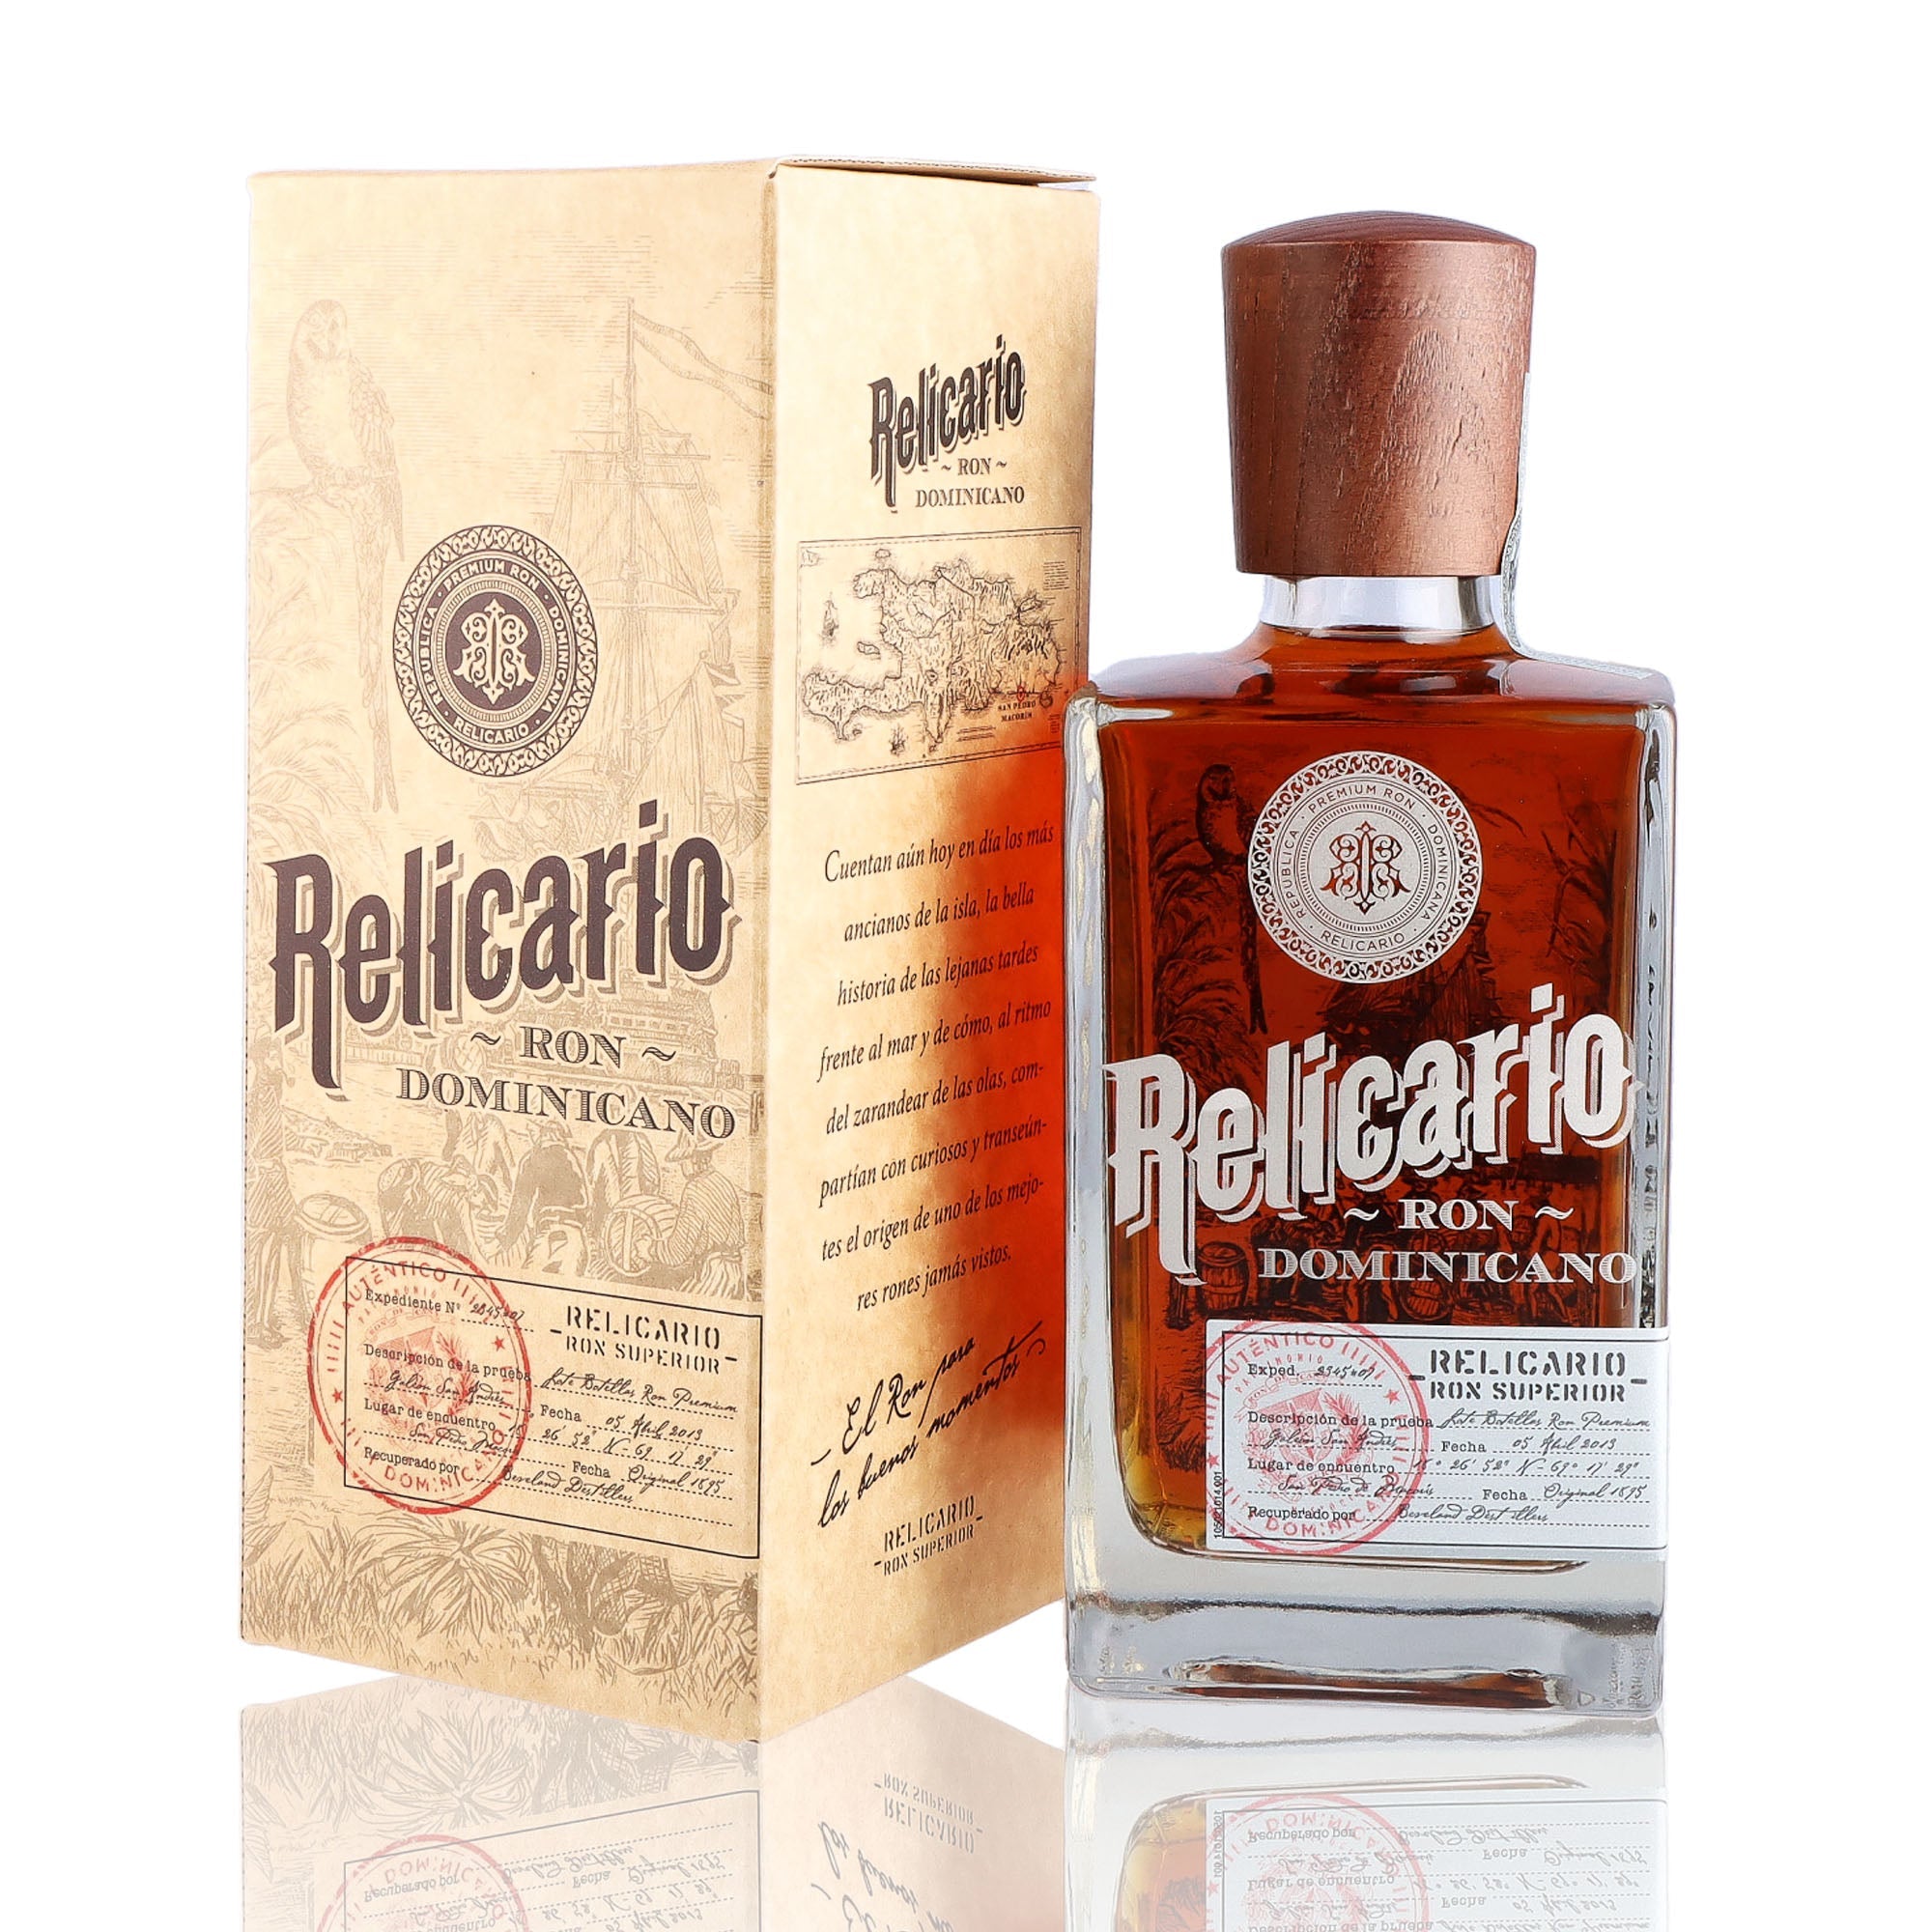 Une bouteille de rhum vieux, de la marque Relicario, nommée Superior.